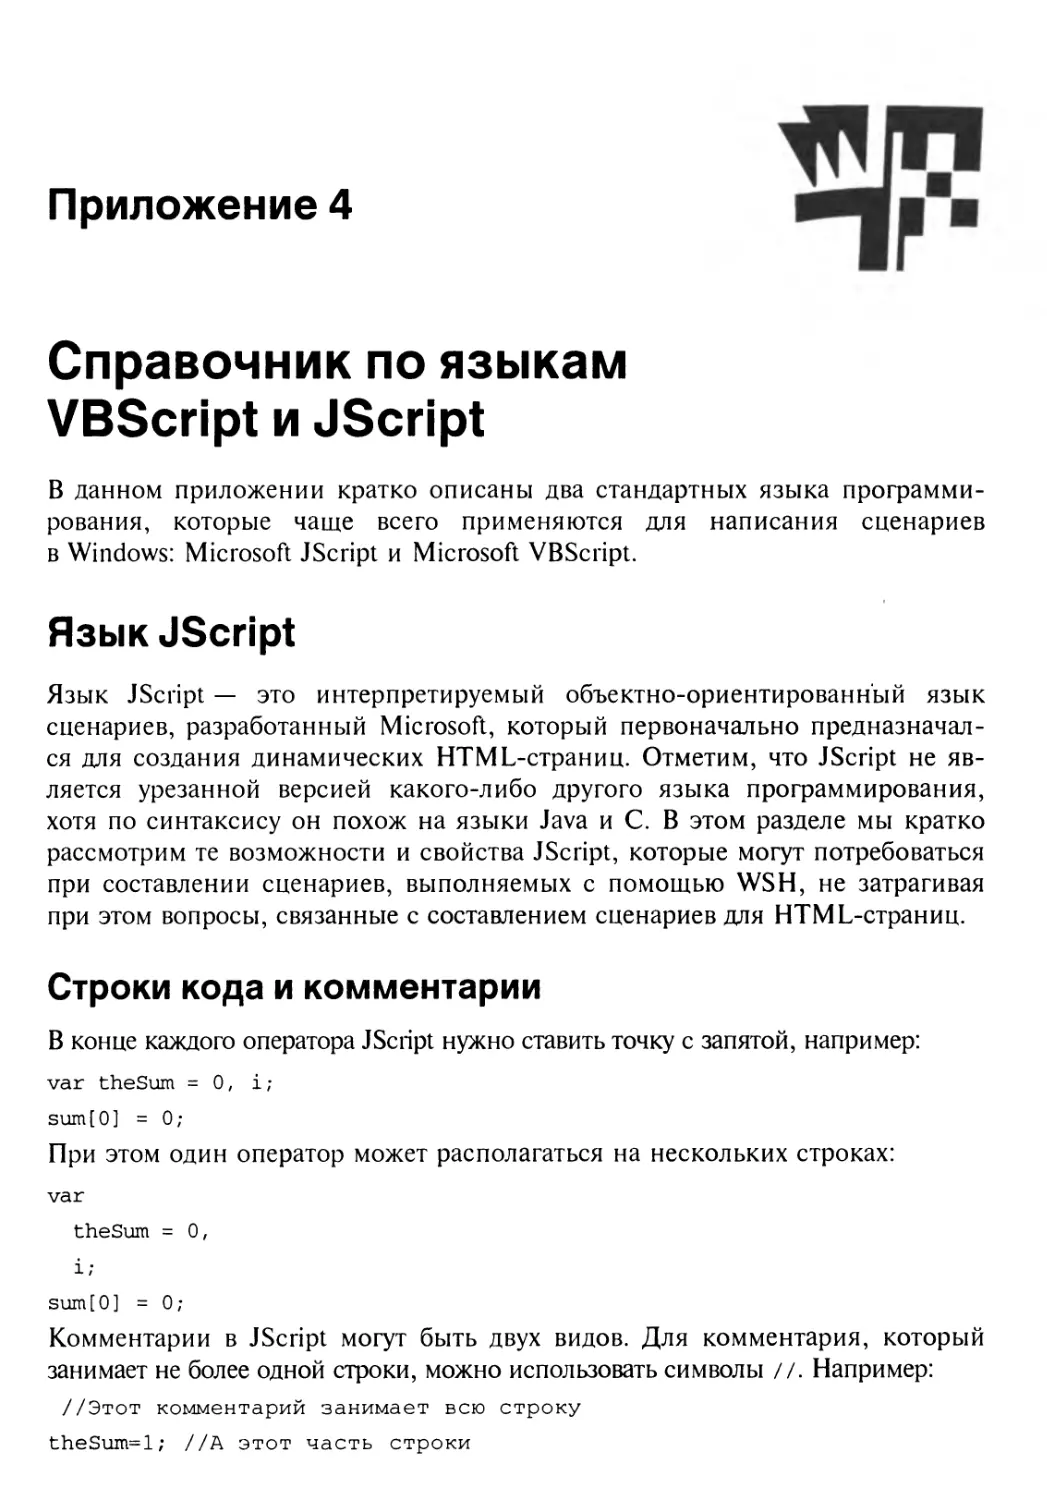 Приложение 4. Справочник по языкам VBScript и JScript